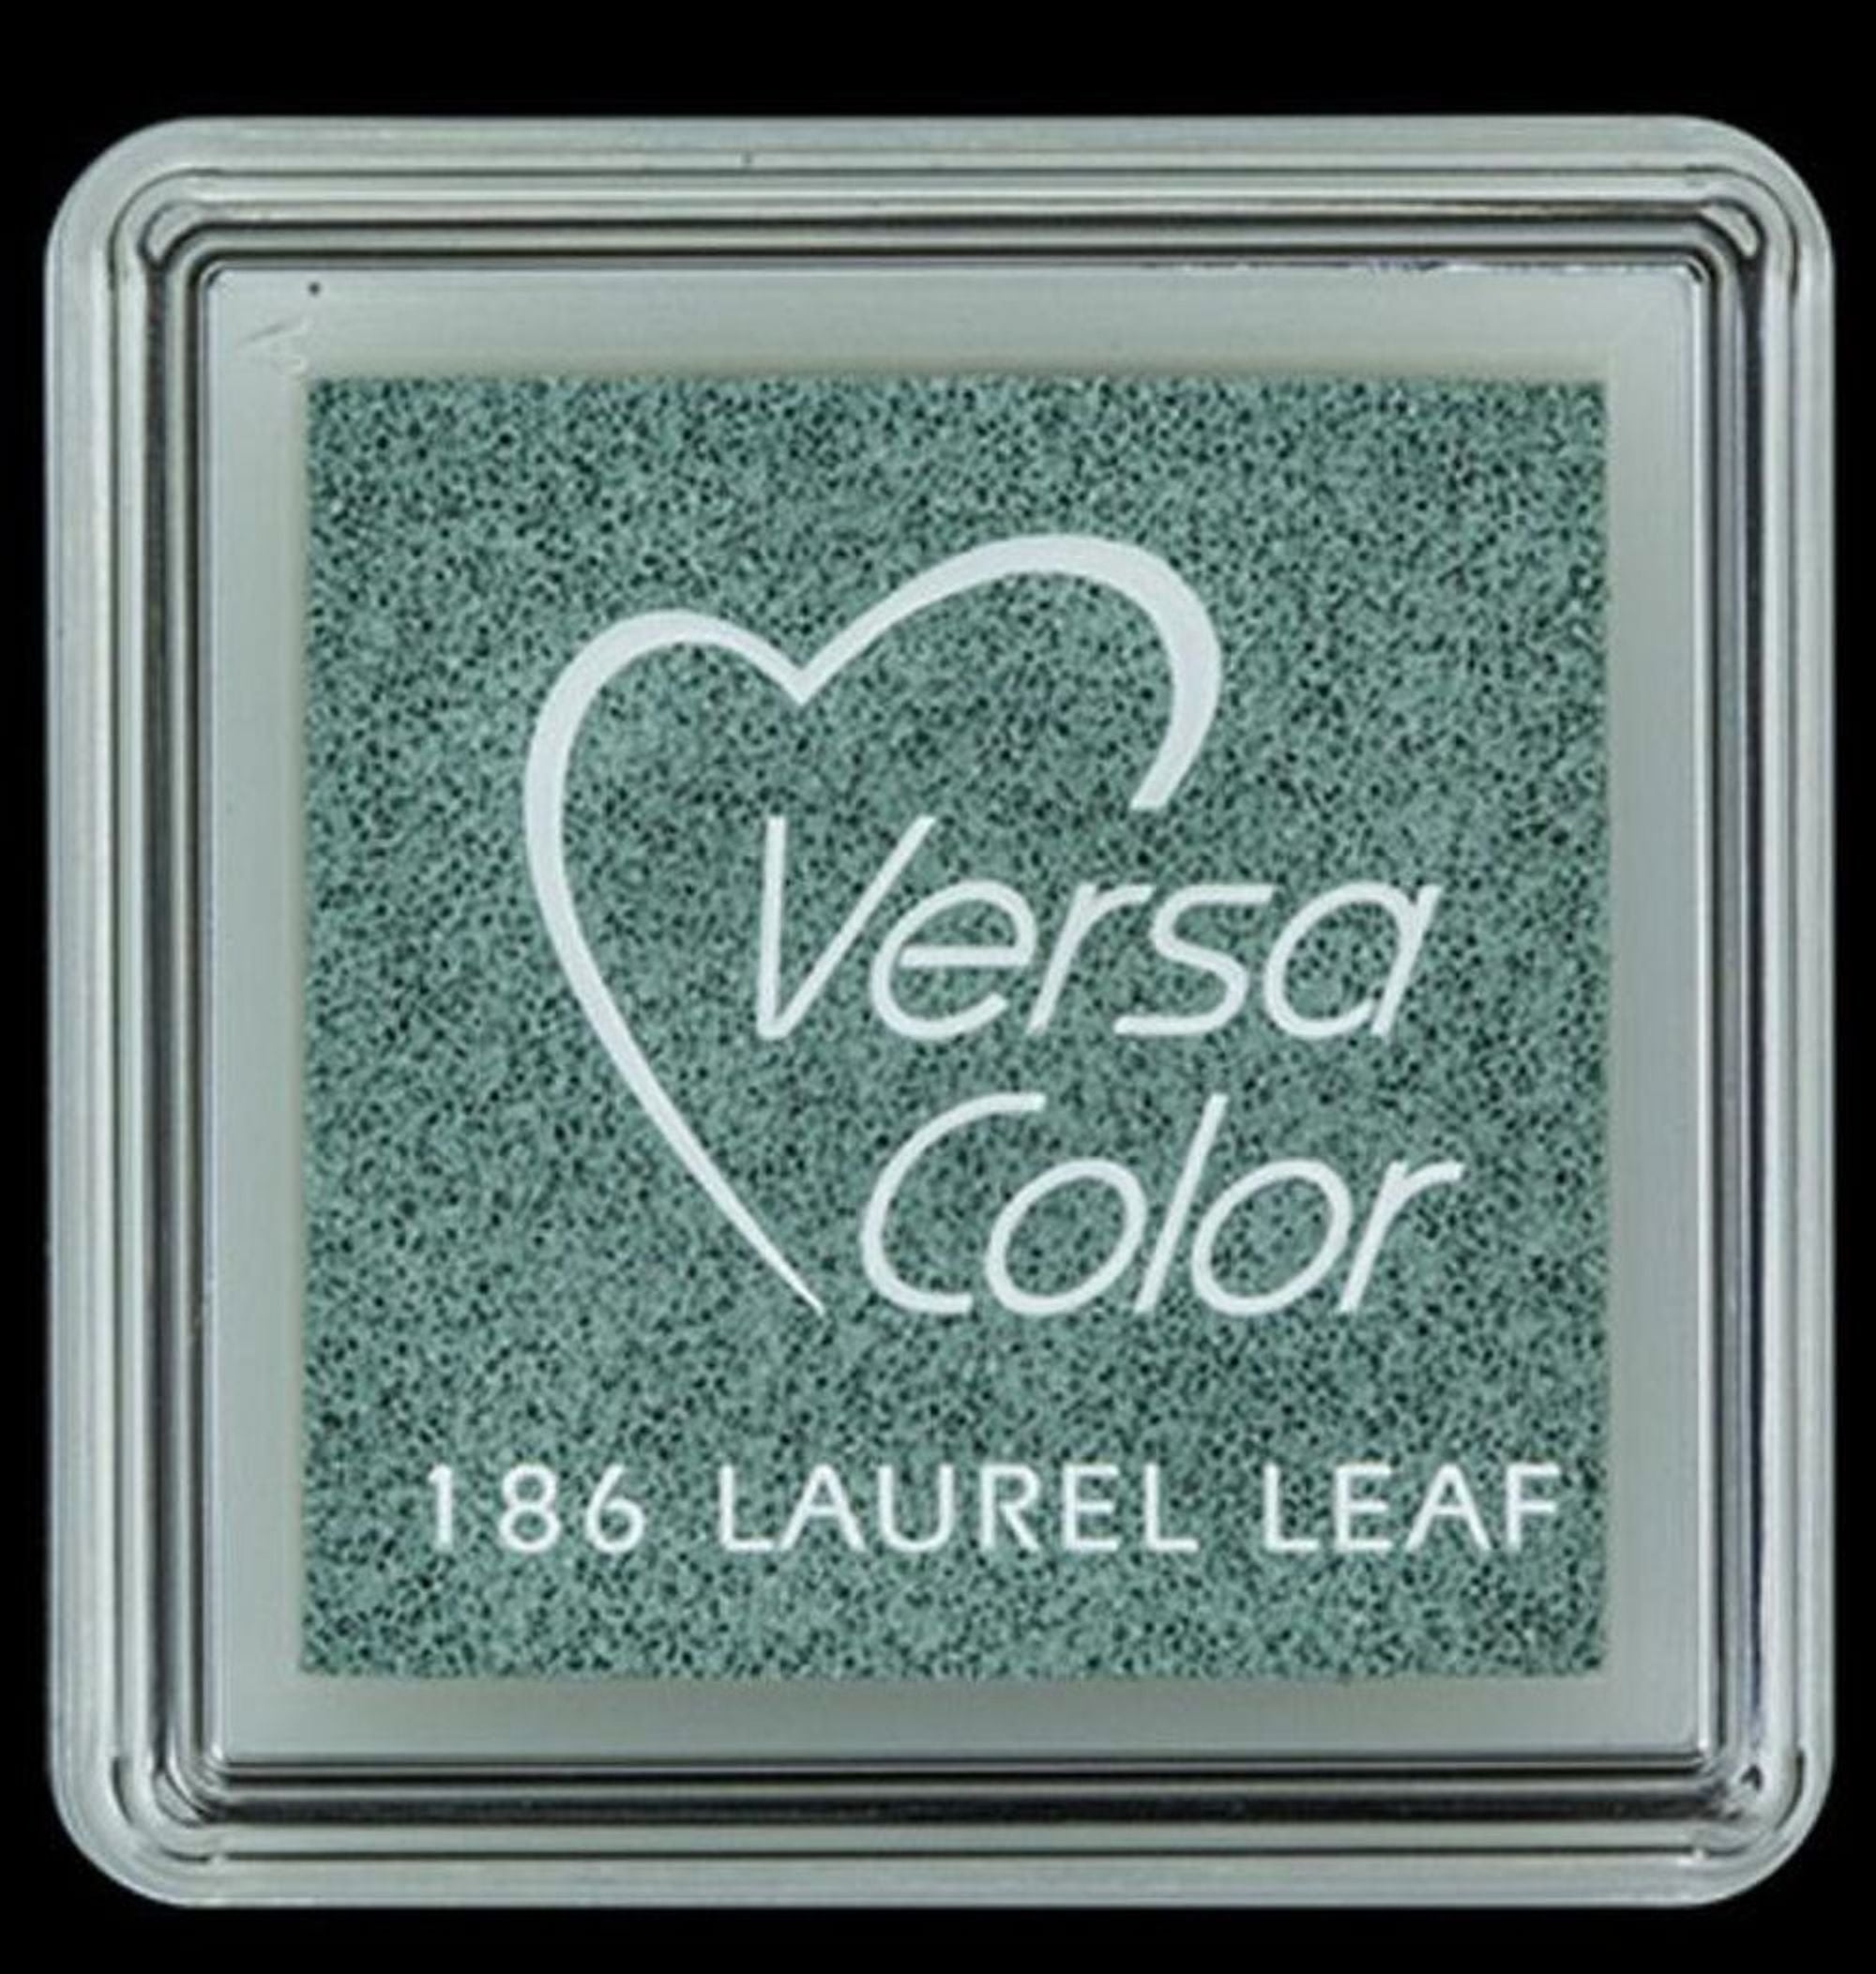 #colour_laurel leaf